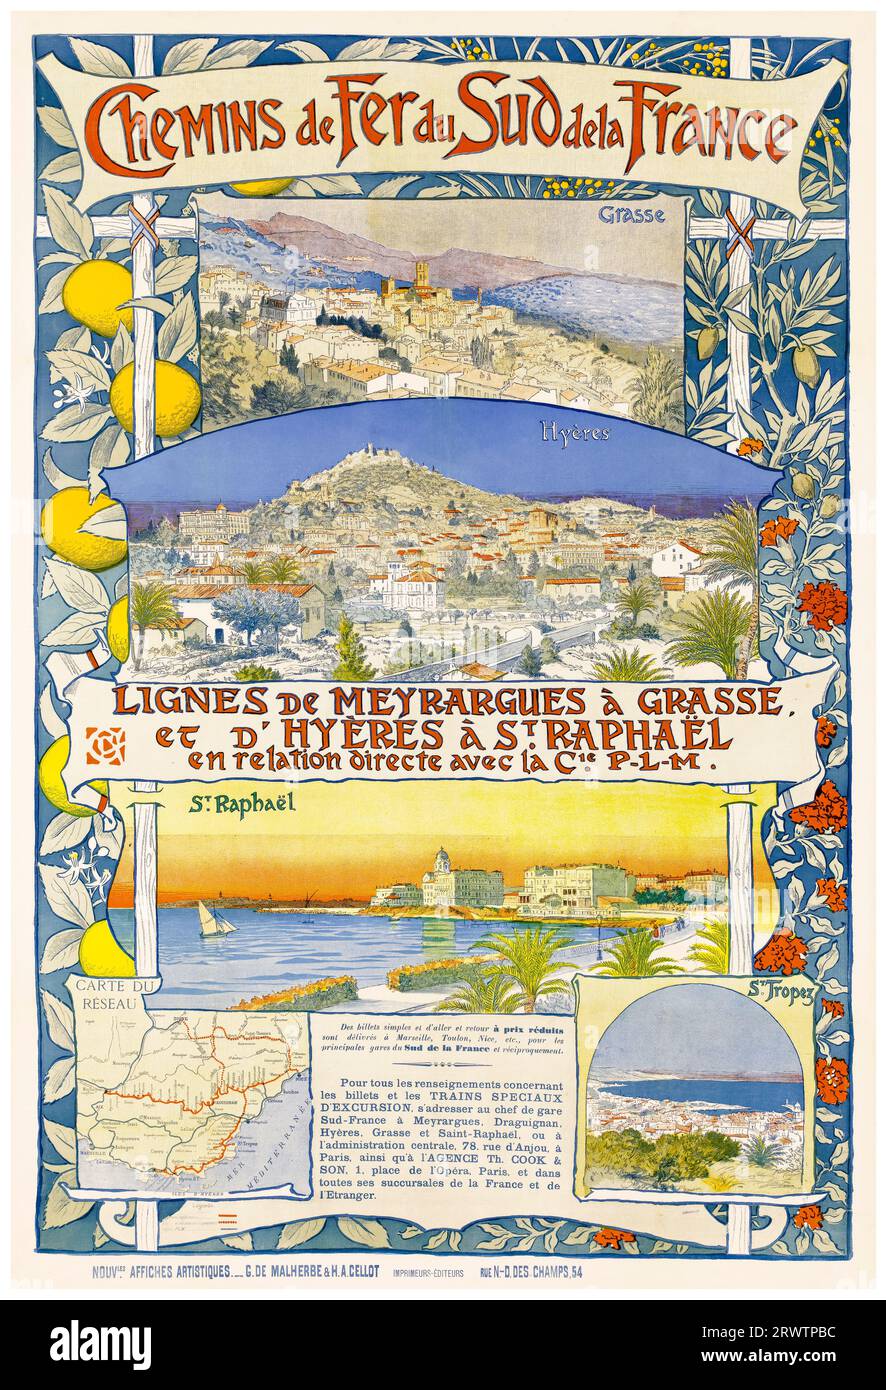 Chemins de fer du Sud de la France, affiche de voyage vintage française, 1891 Banque D'Images